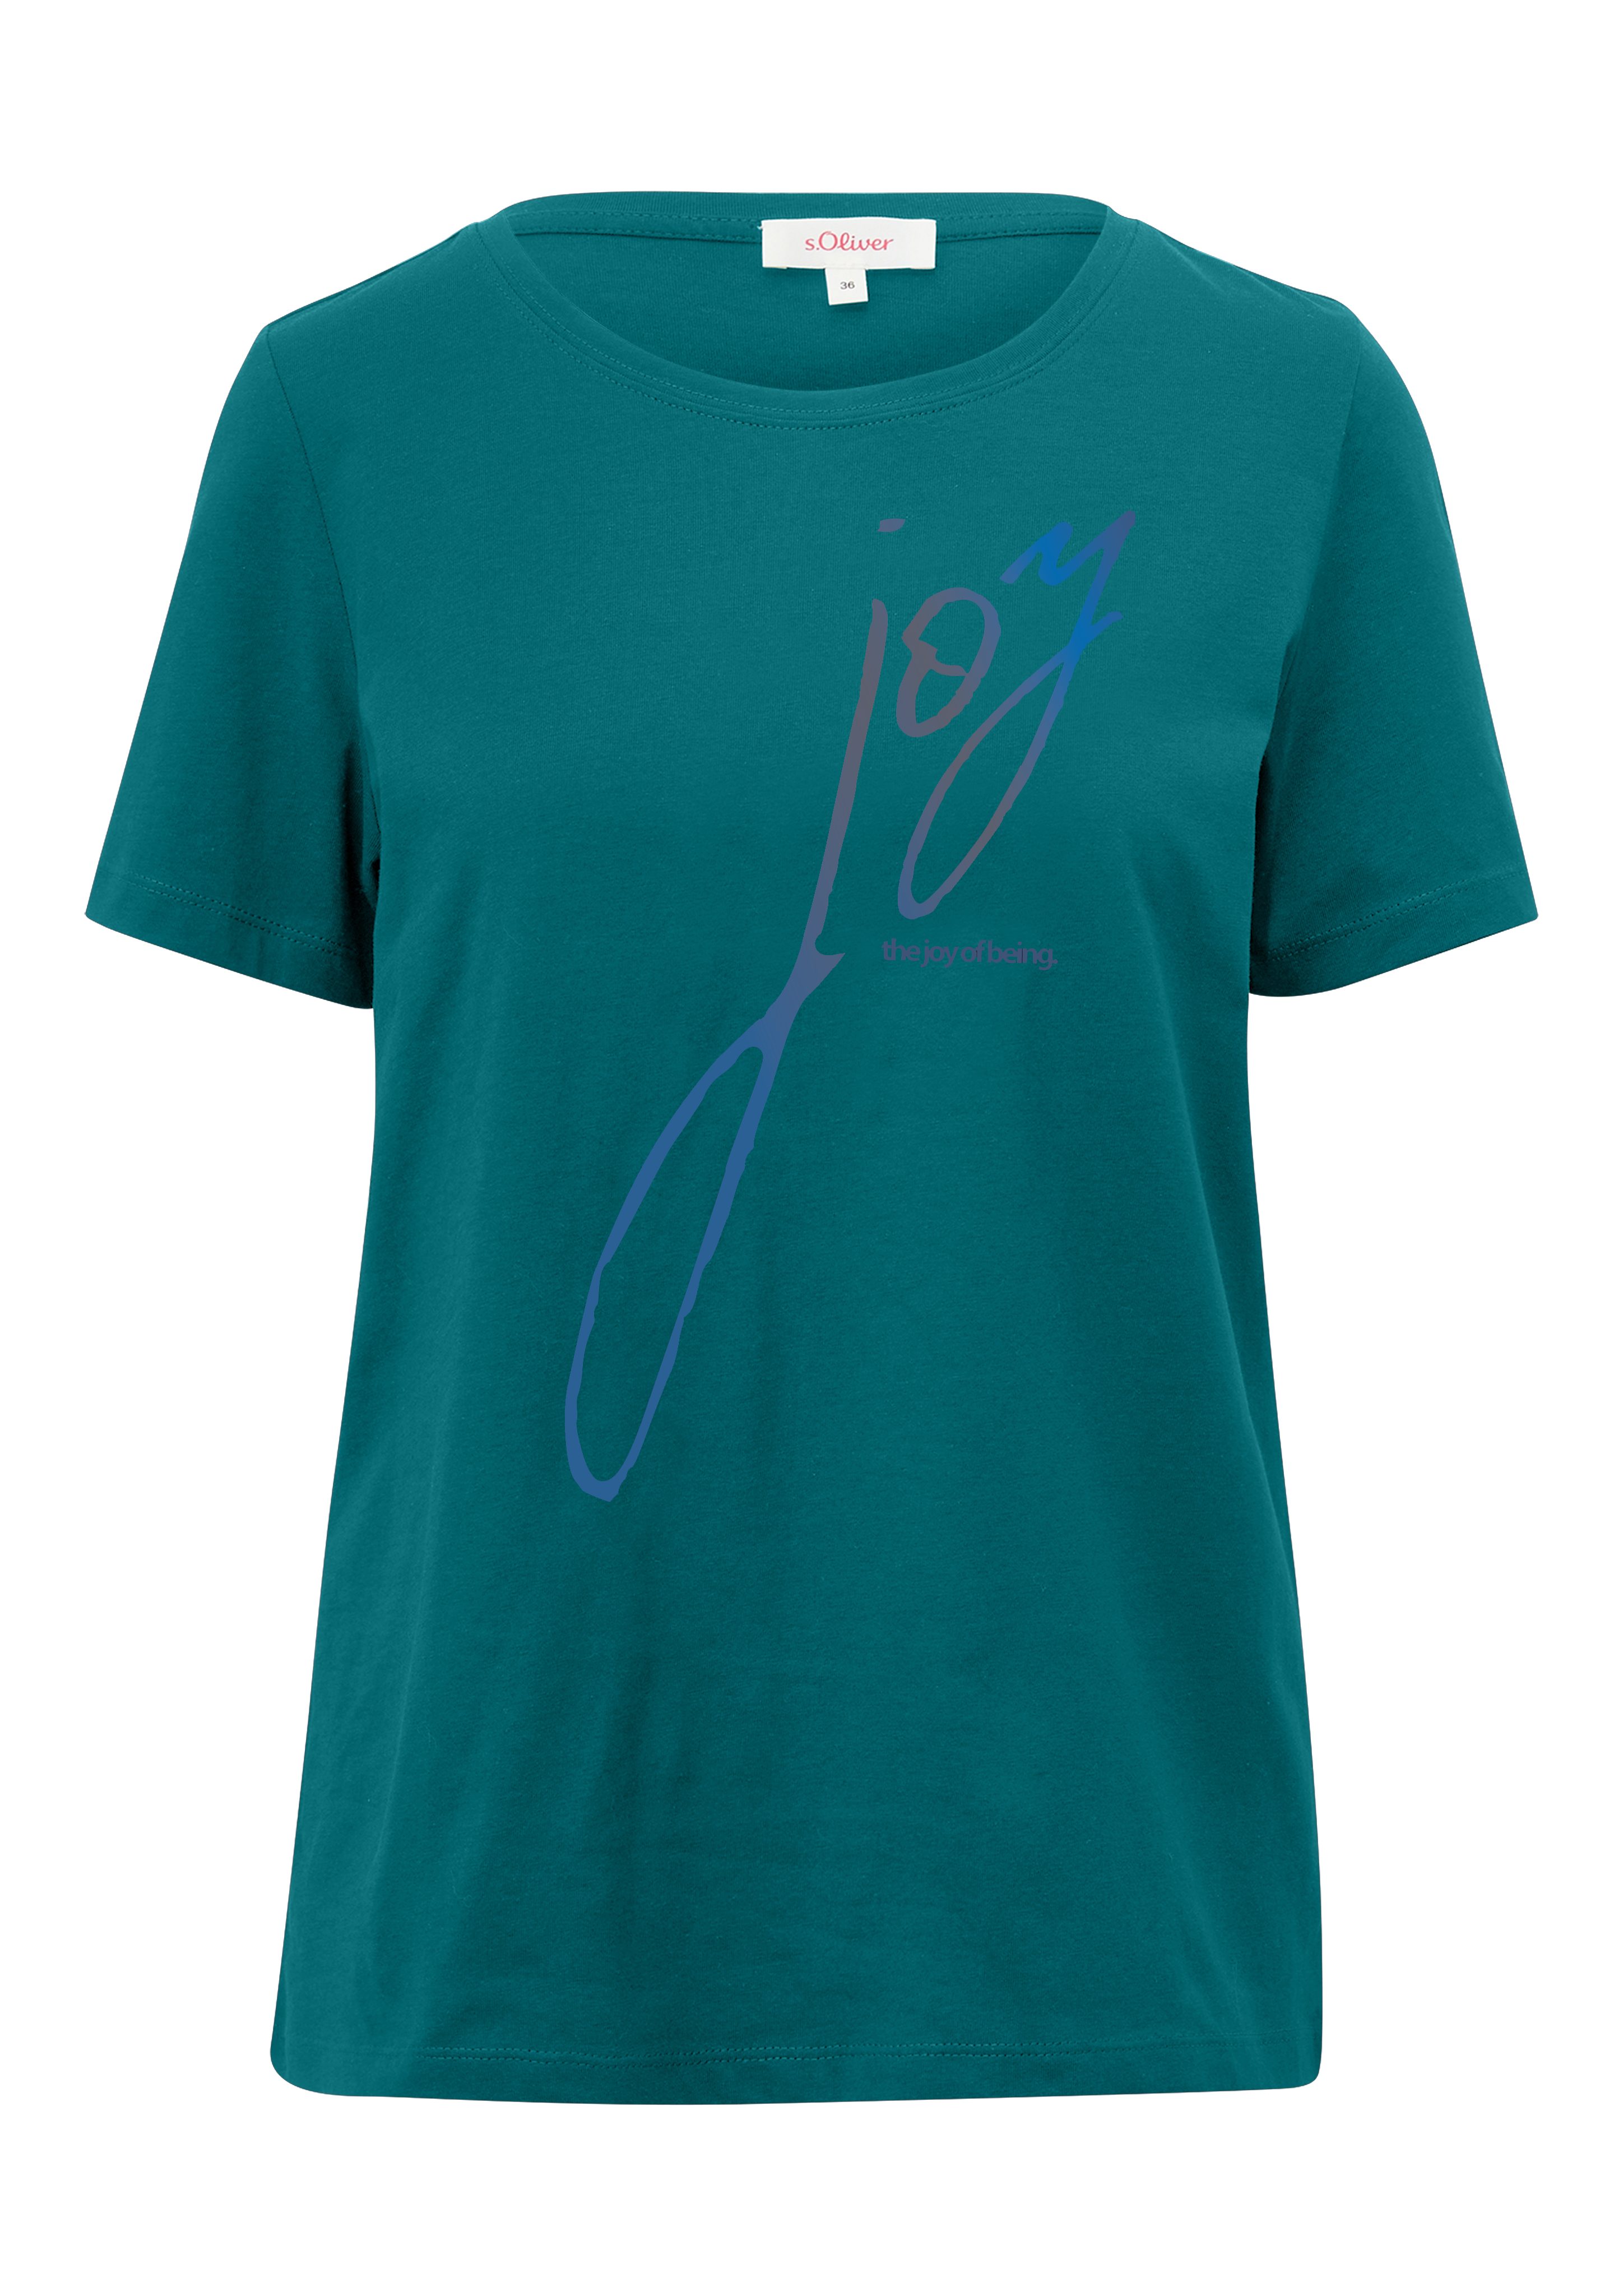 s.Oliver T-Shirt mit Aufschrift vorne green blue